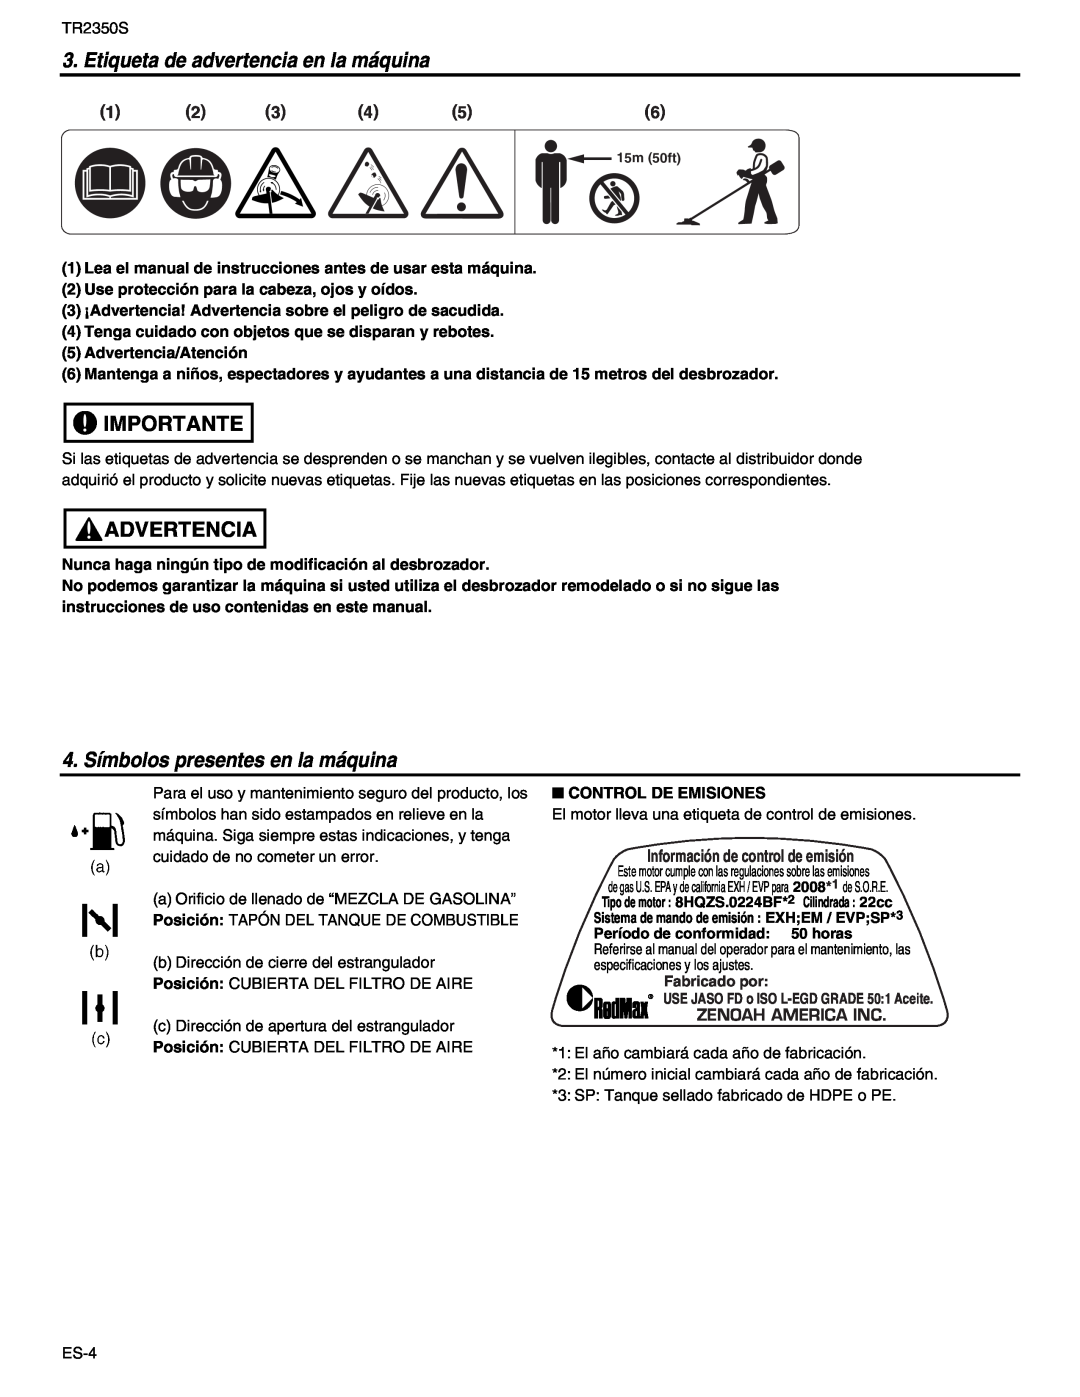 RedMax TR2350S manual Etiqueta de advertencia en la máquina, 4. Símbolos presentes en la máquina, Importante, Advertencia 